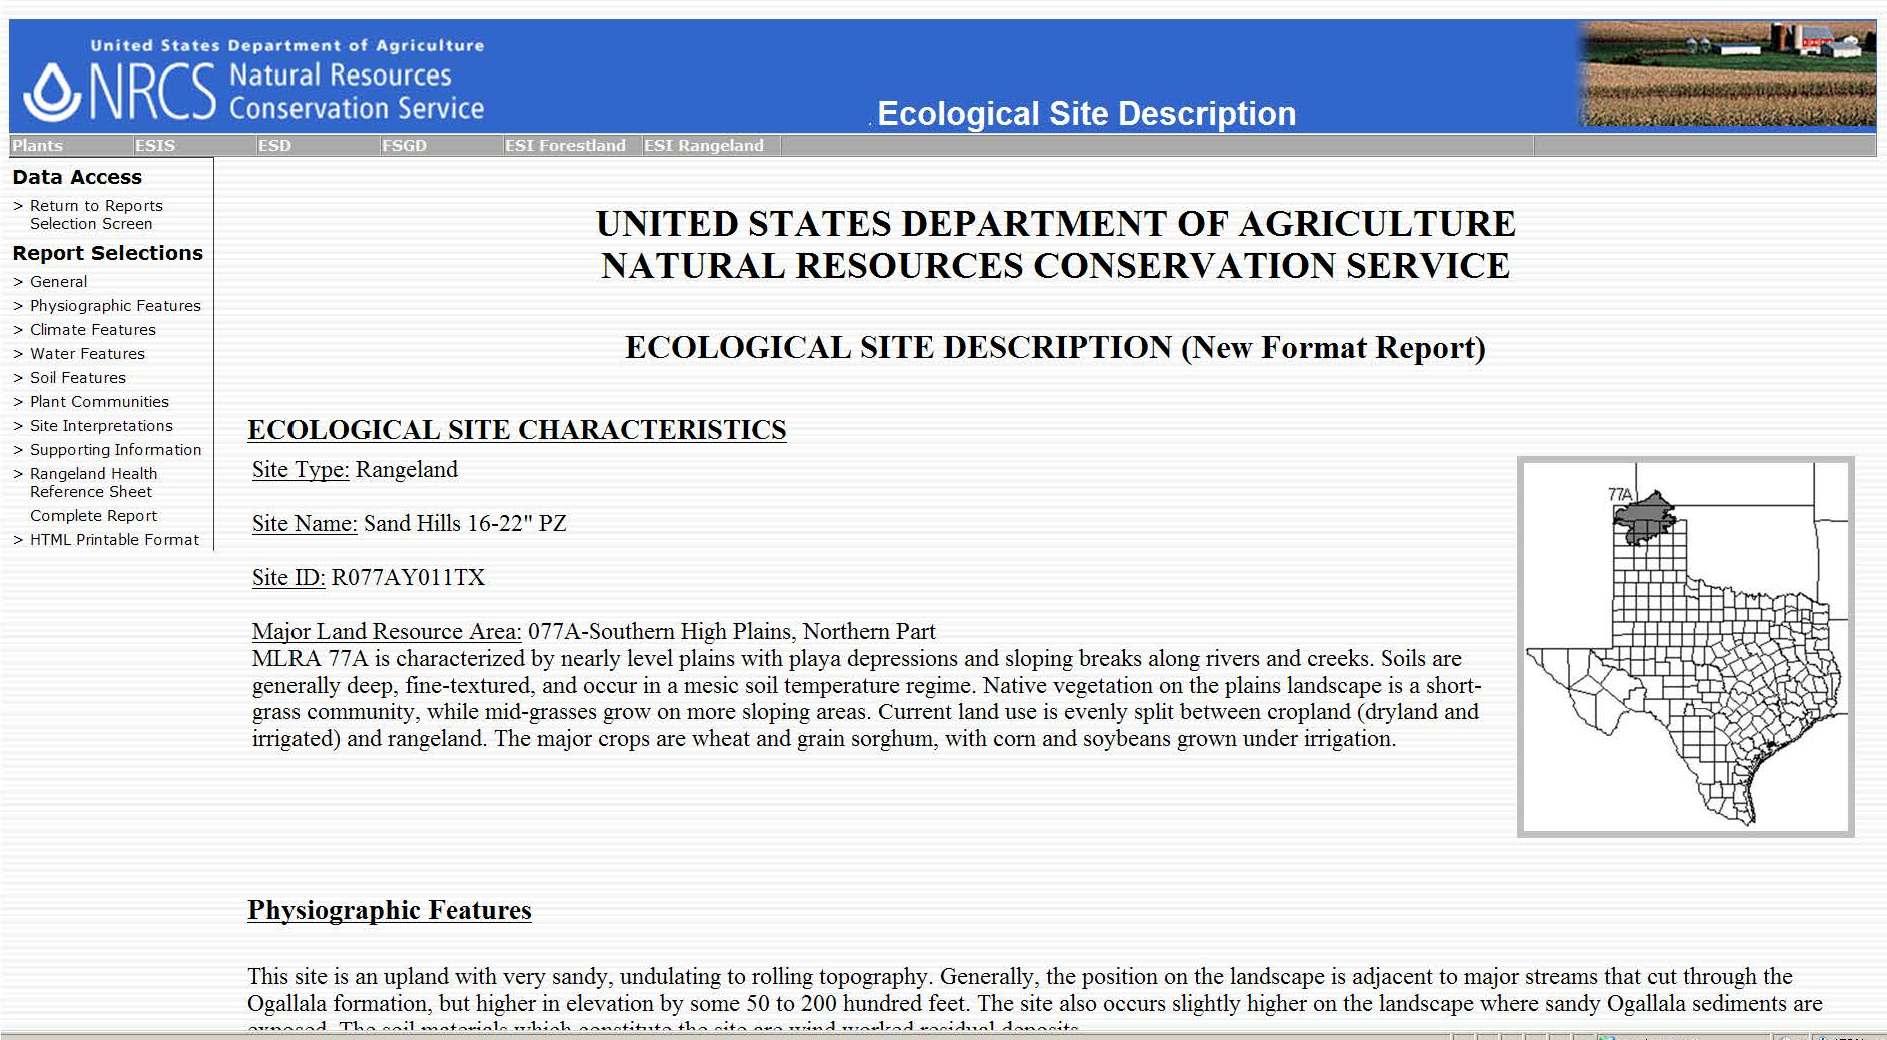 Ecological Site Description Report